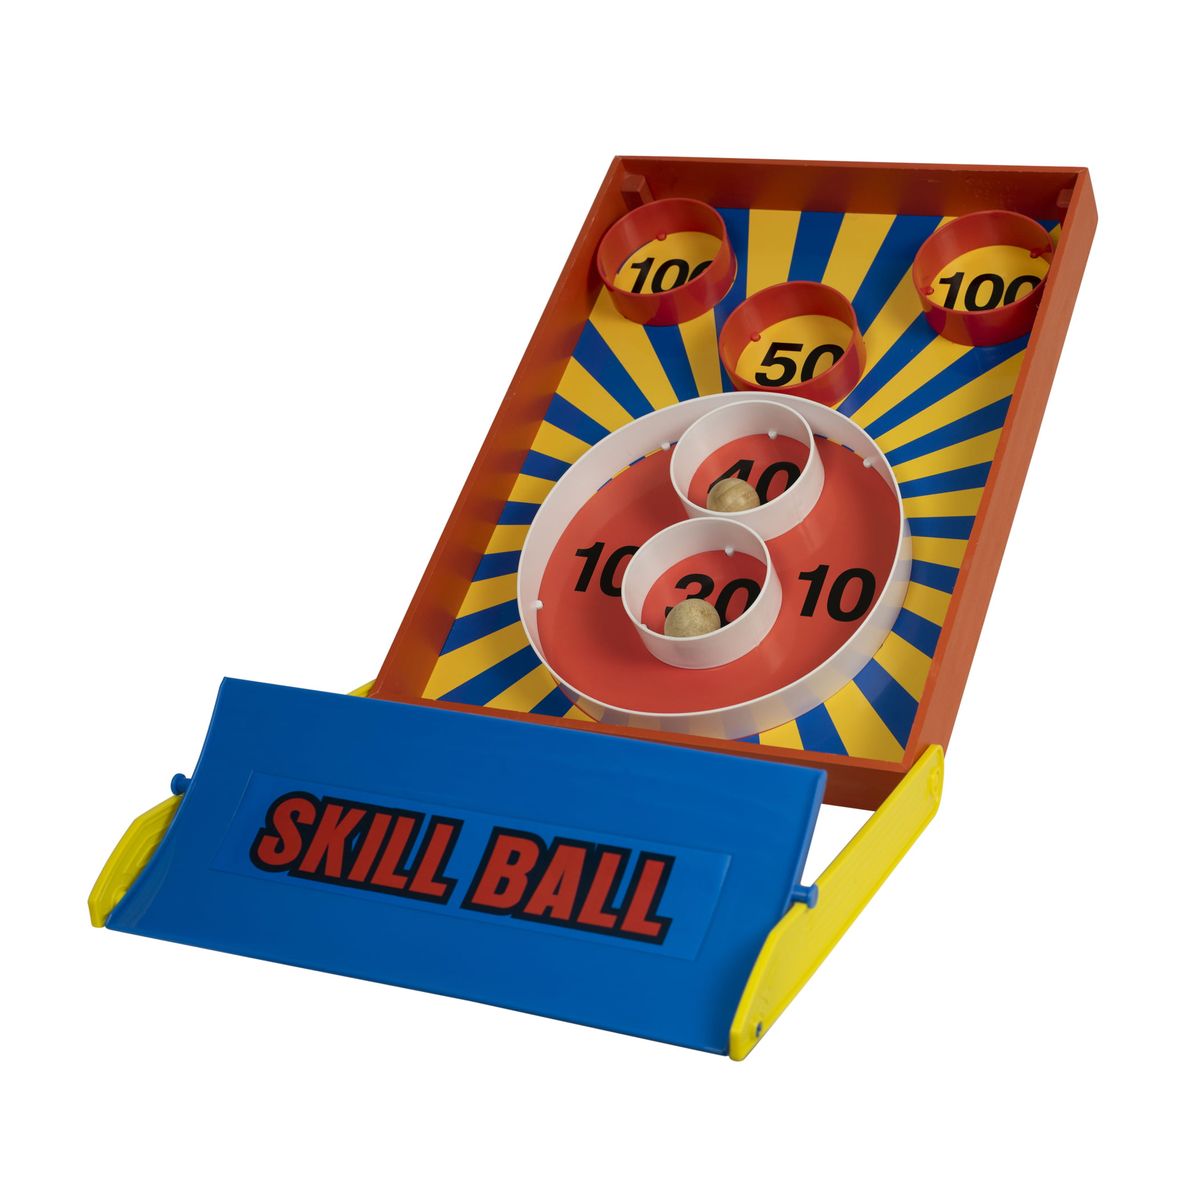 [RDY] [送料無料] Homeware 木製スキルボールゲーム [楽天海外通販] | Homeware Wooden Skill Ball Game